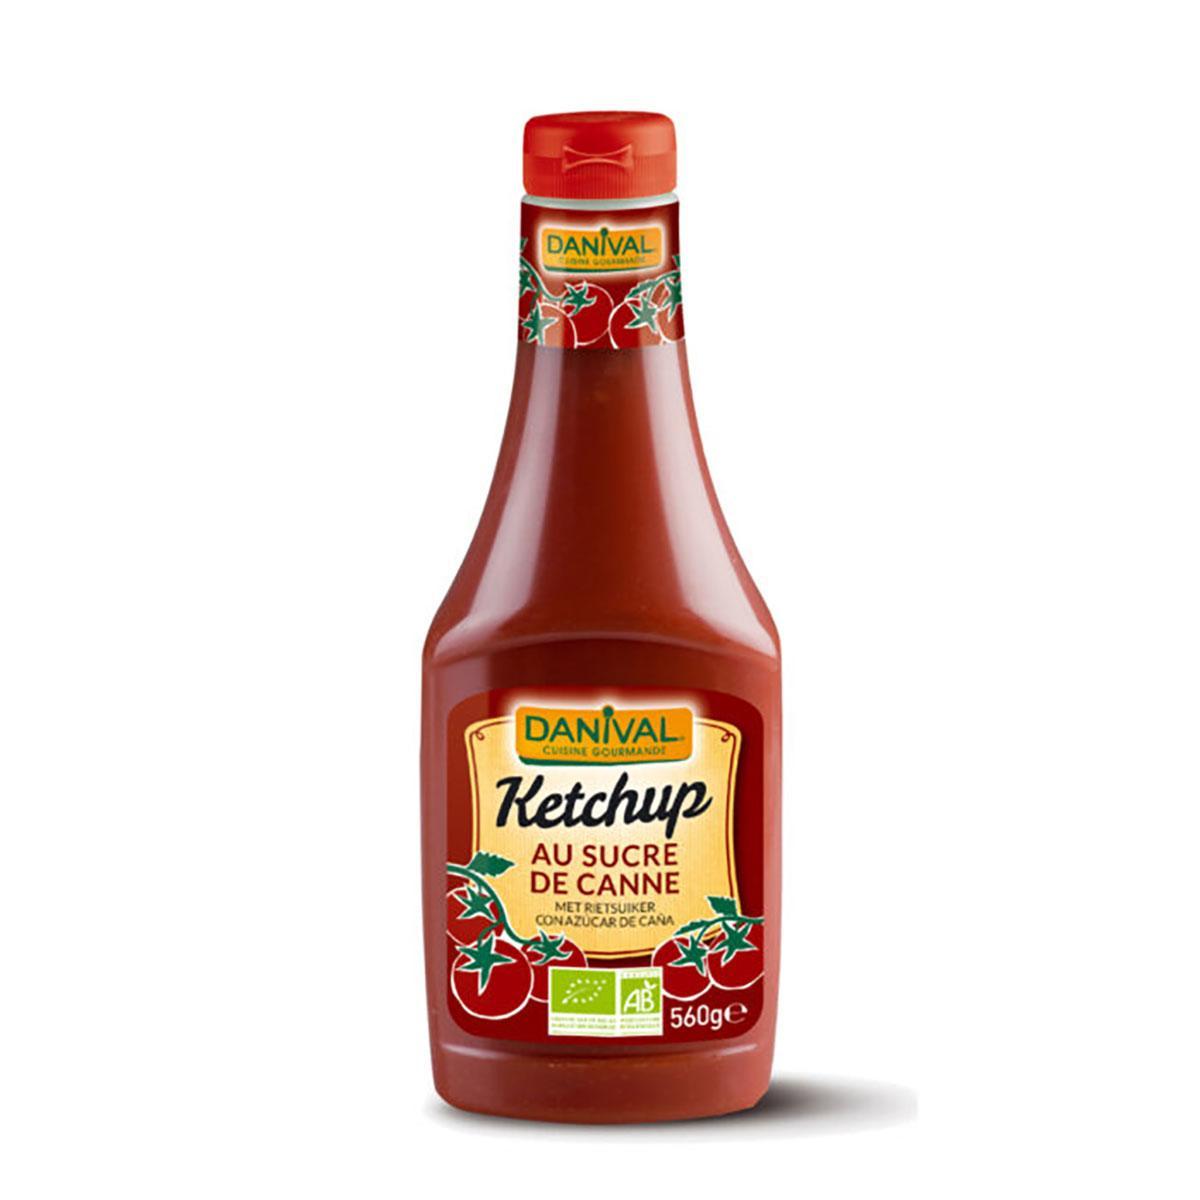 Ketchup Danival från Biodynamiska Produkter